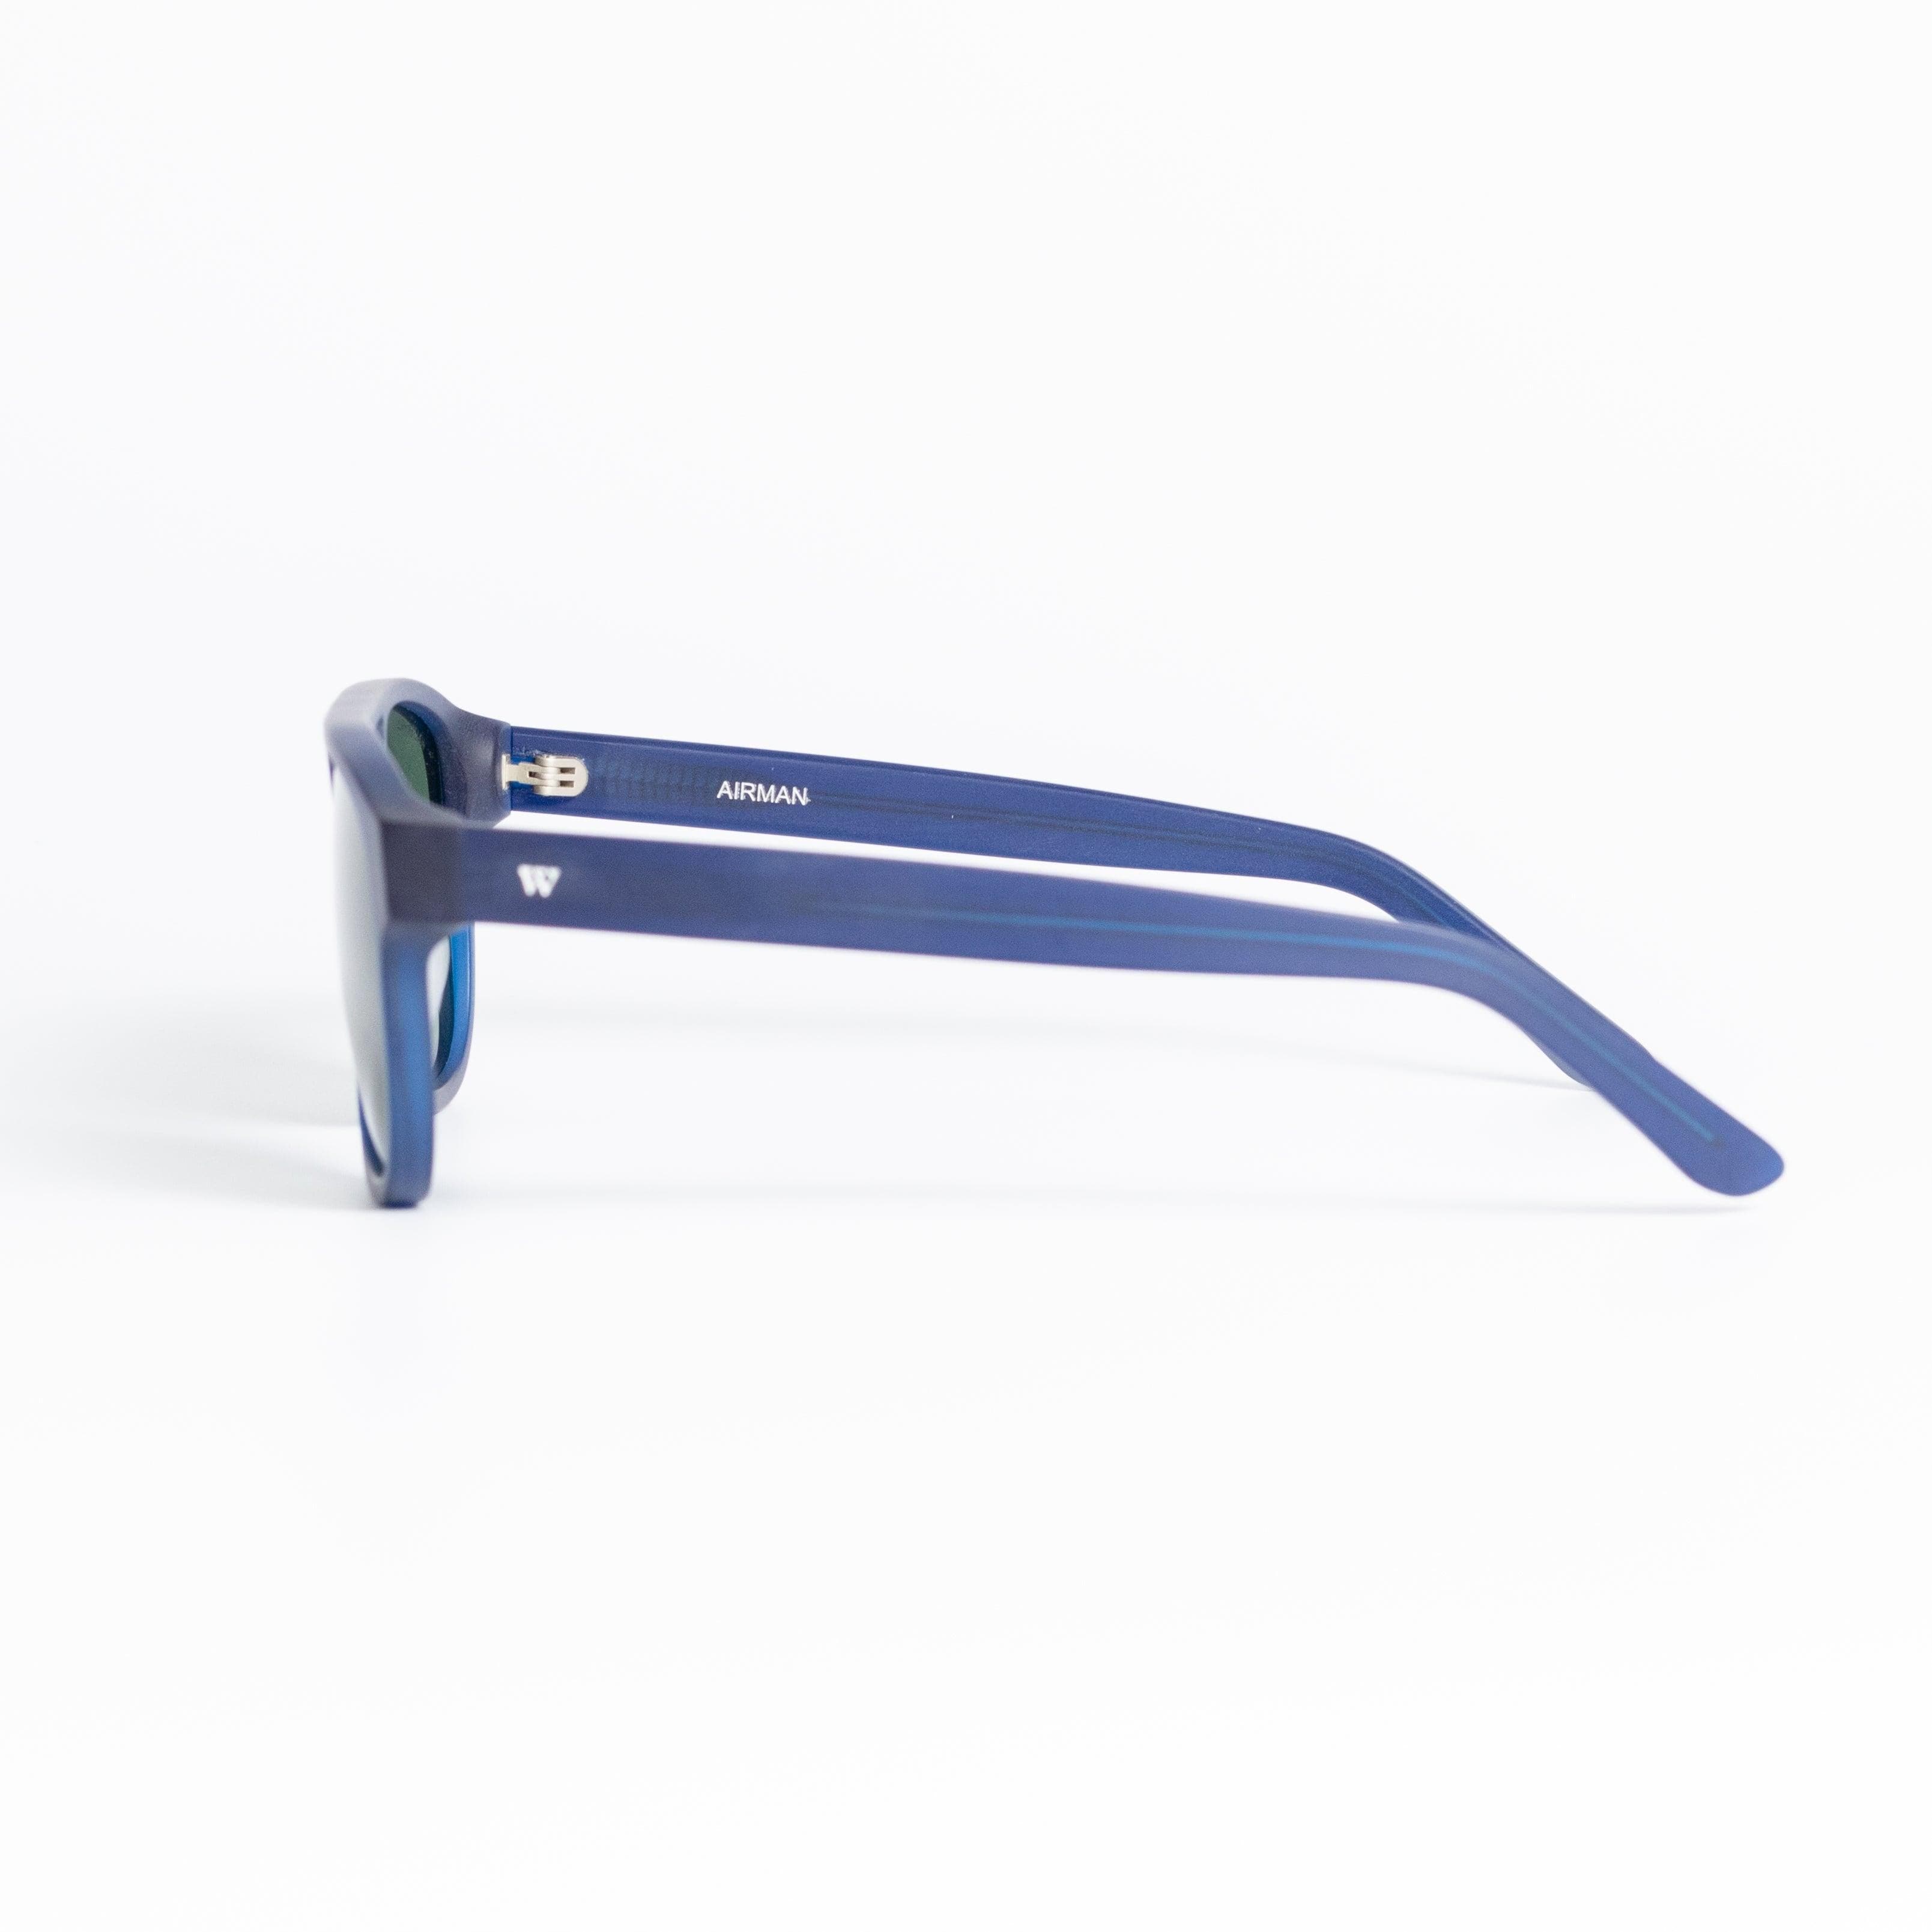 Walter Hill Sunglasses Matte Blue / Standard / Polarized Cat.3 AIRMAN - Matte Blue